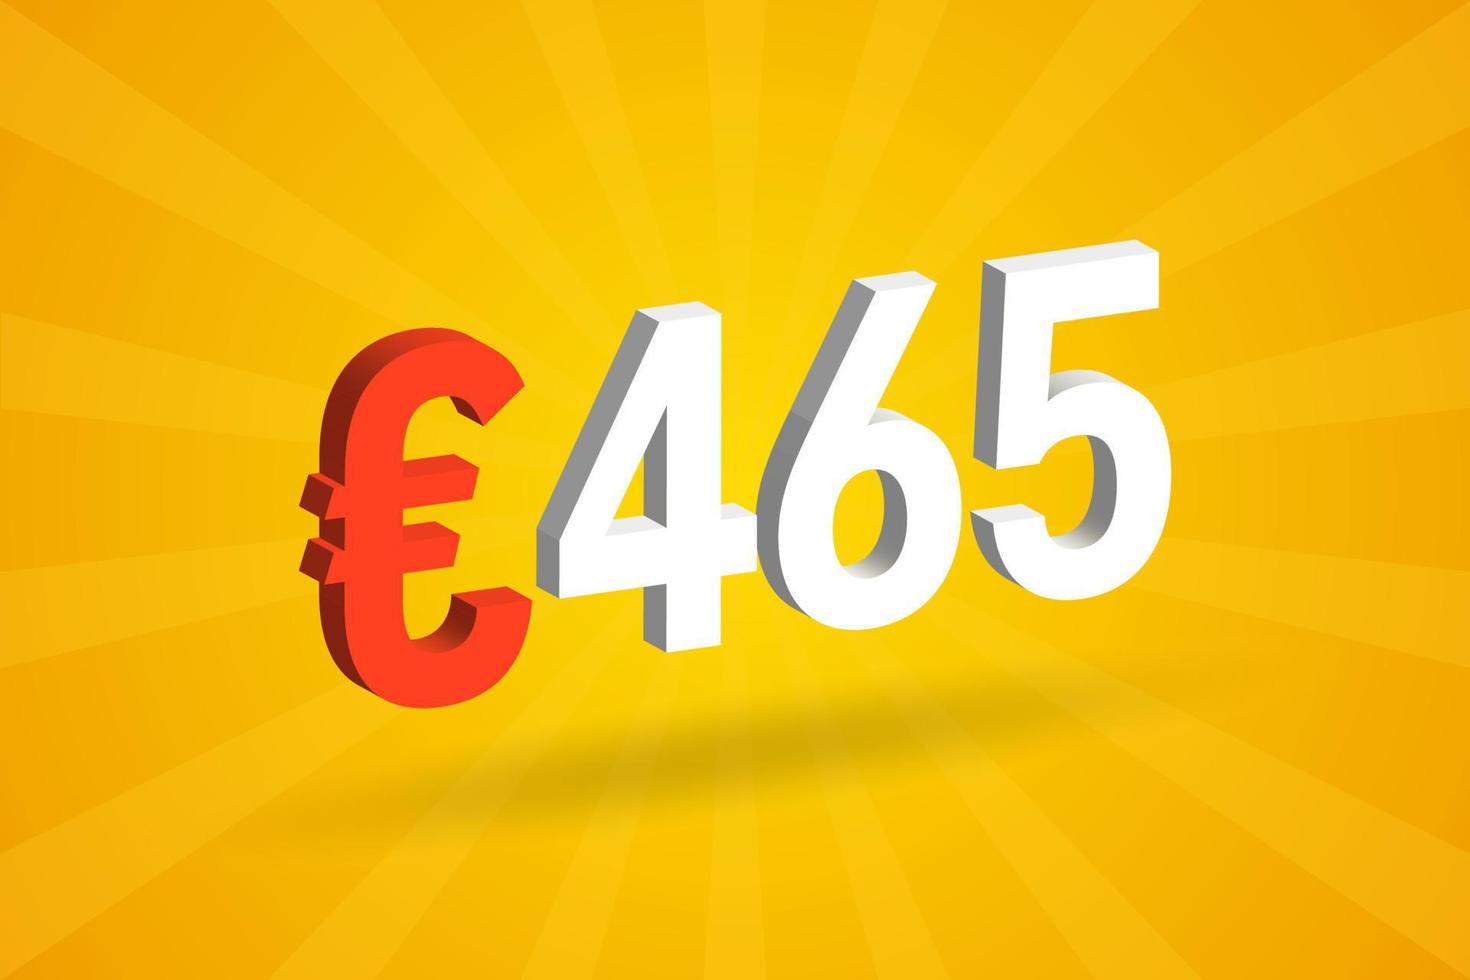 Símbolo de texto de vetor 3d de moeda de 465 euros. vetor de estoque de dinheiro da união europeia 3d 465 euro